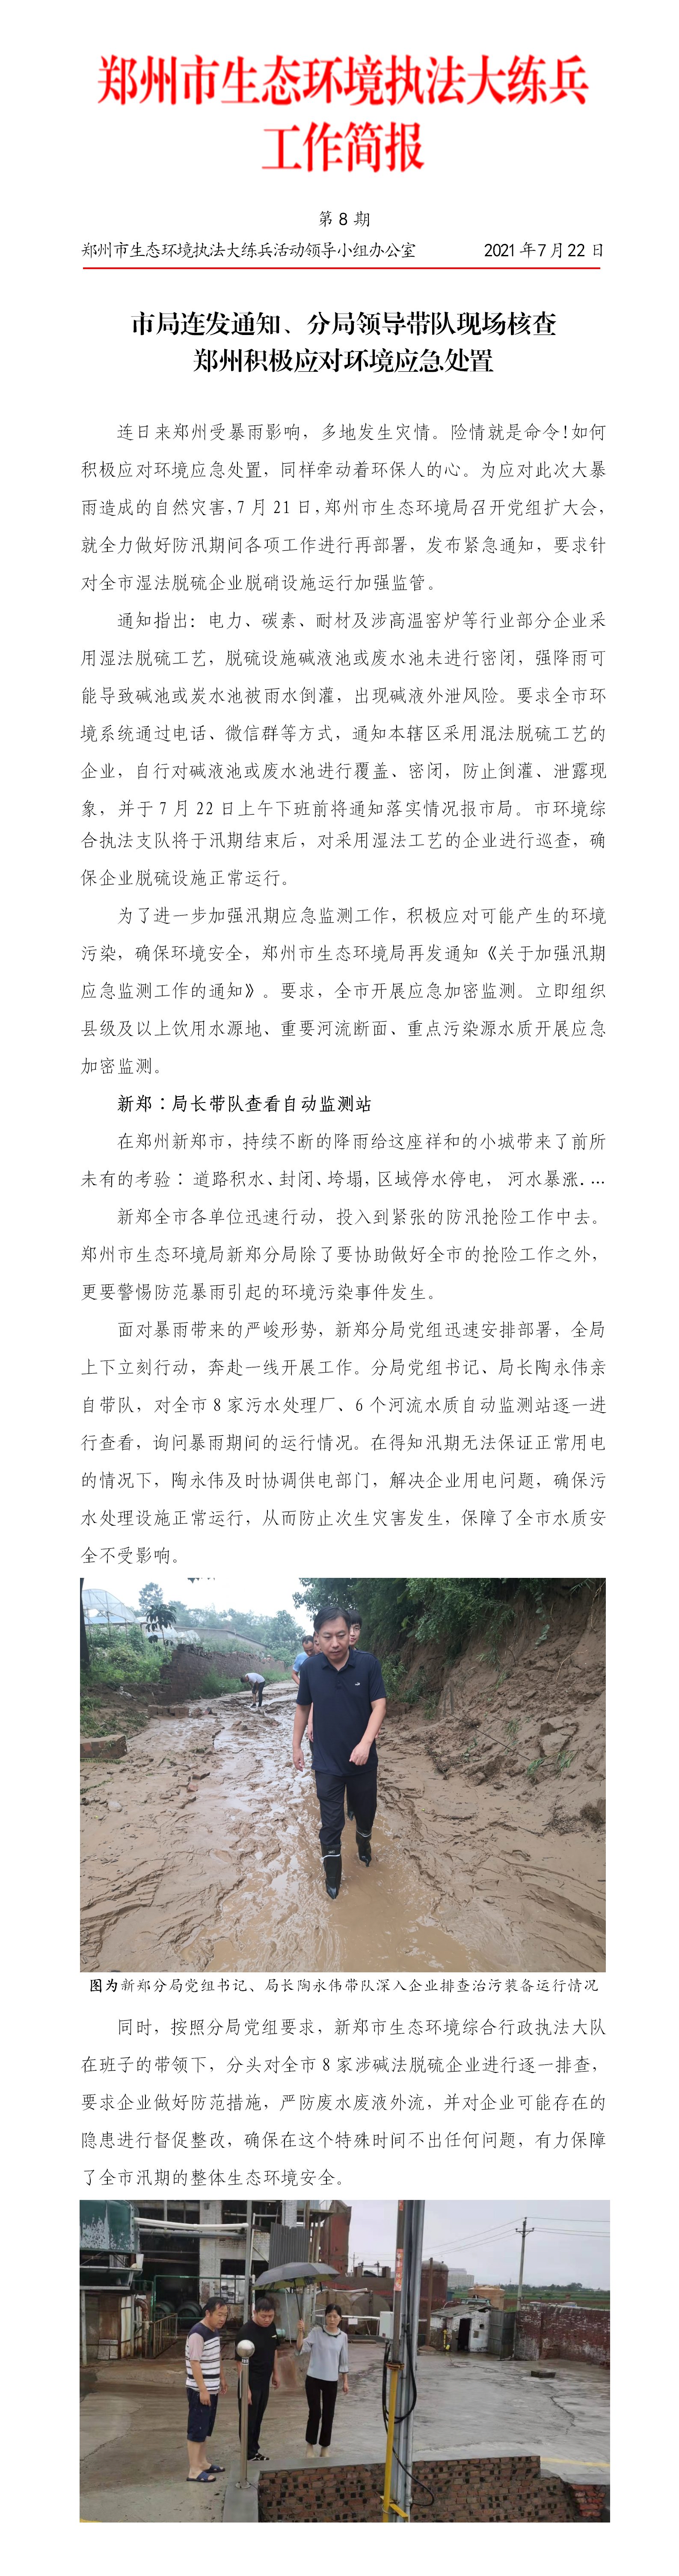 第8期 郑州市简报 市局连发通知、分局领导带队现场核查，郑州积极应对环境应急处置.png